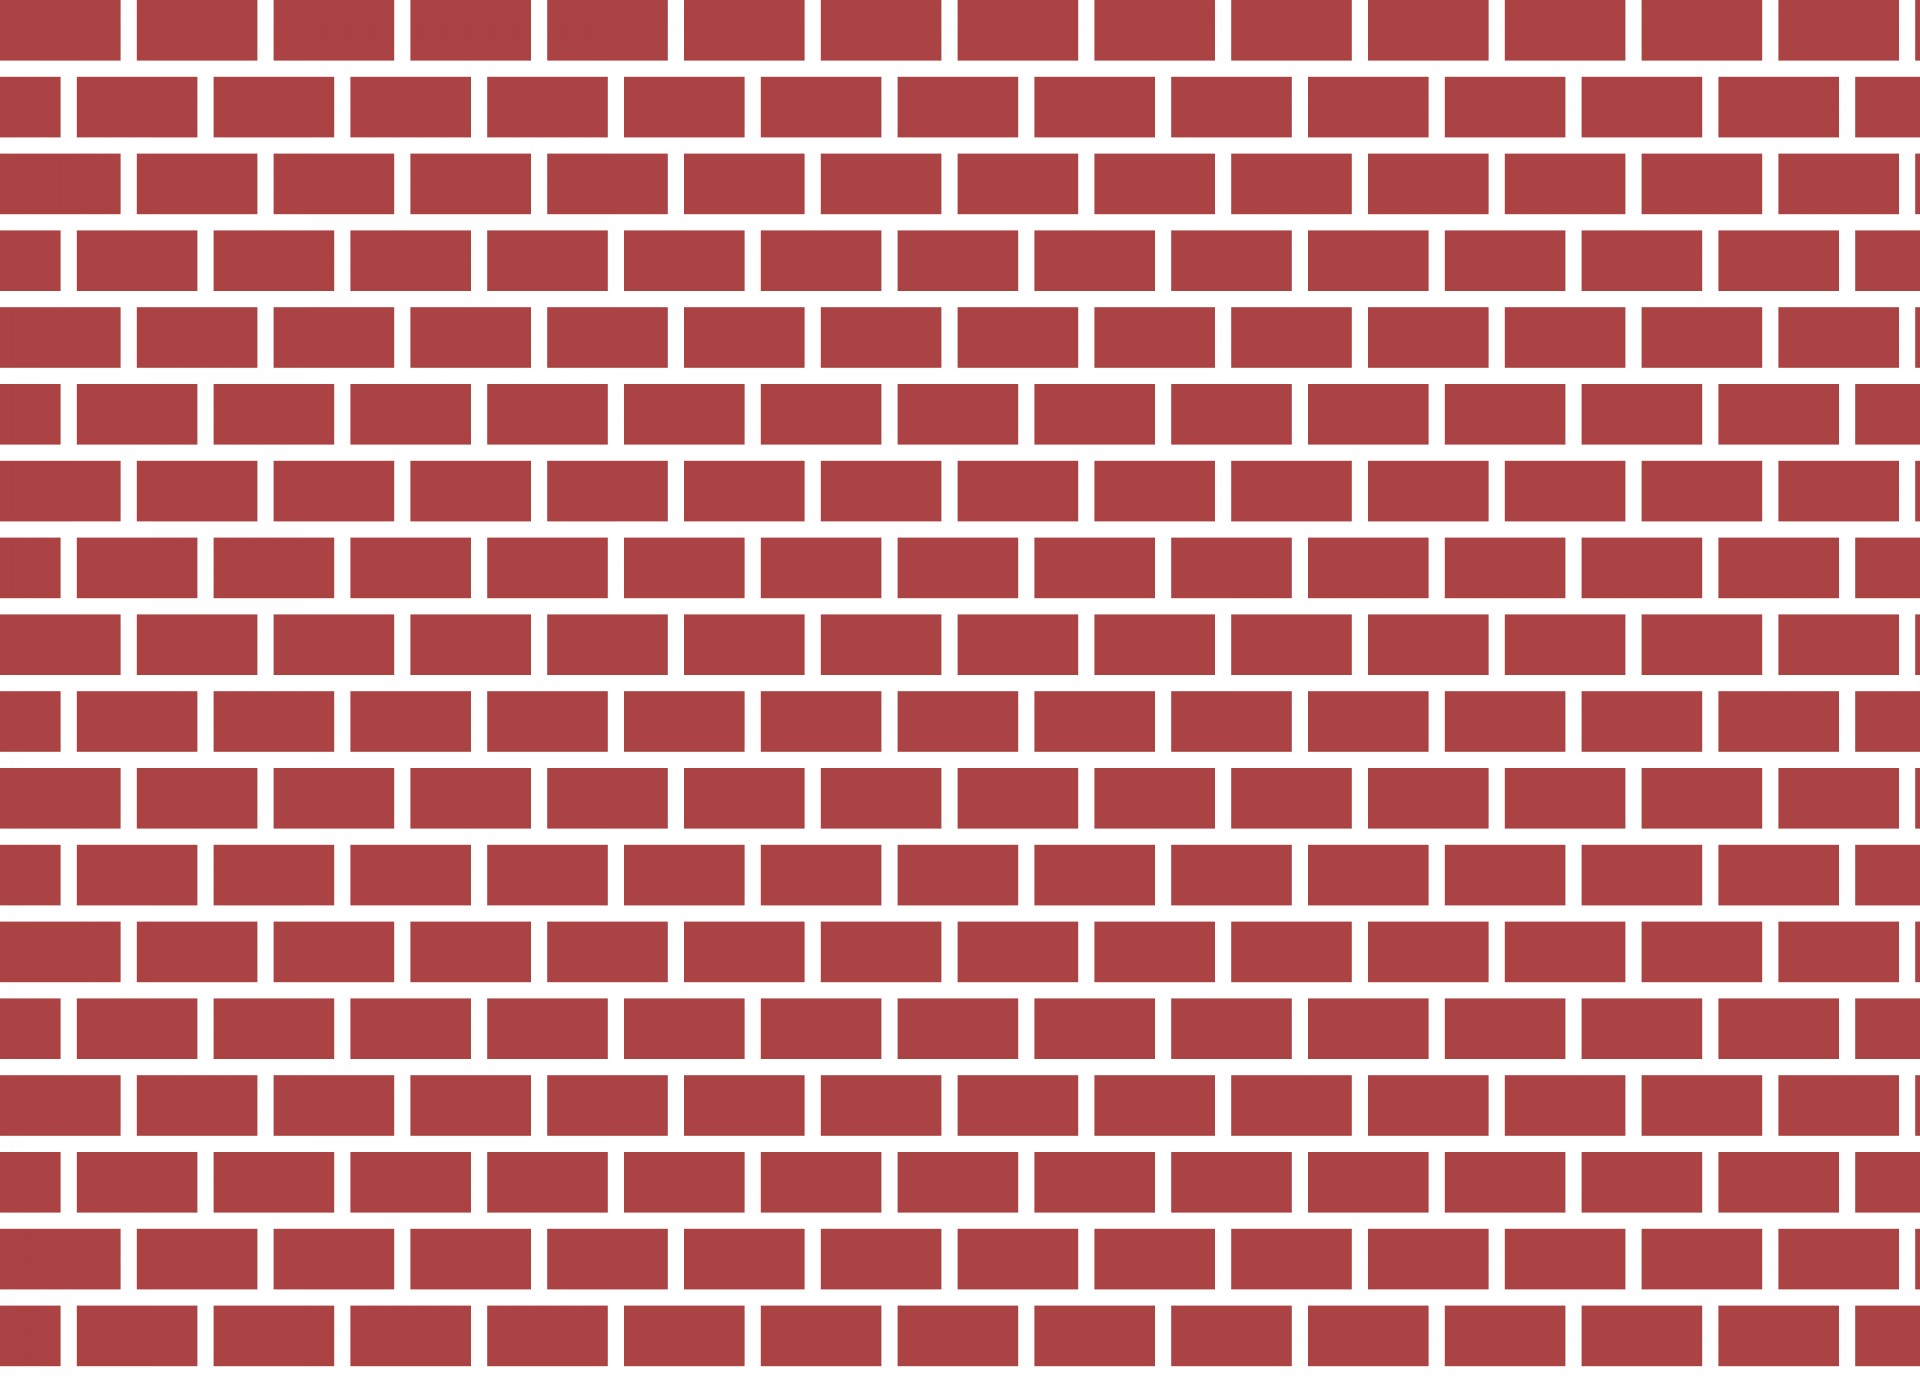 Brick Png Image PNG Image